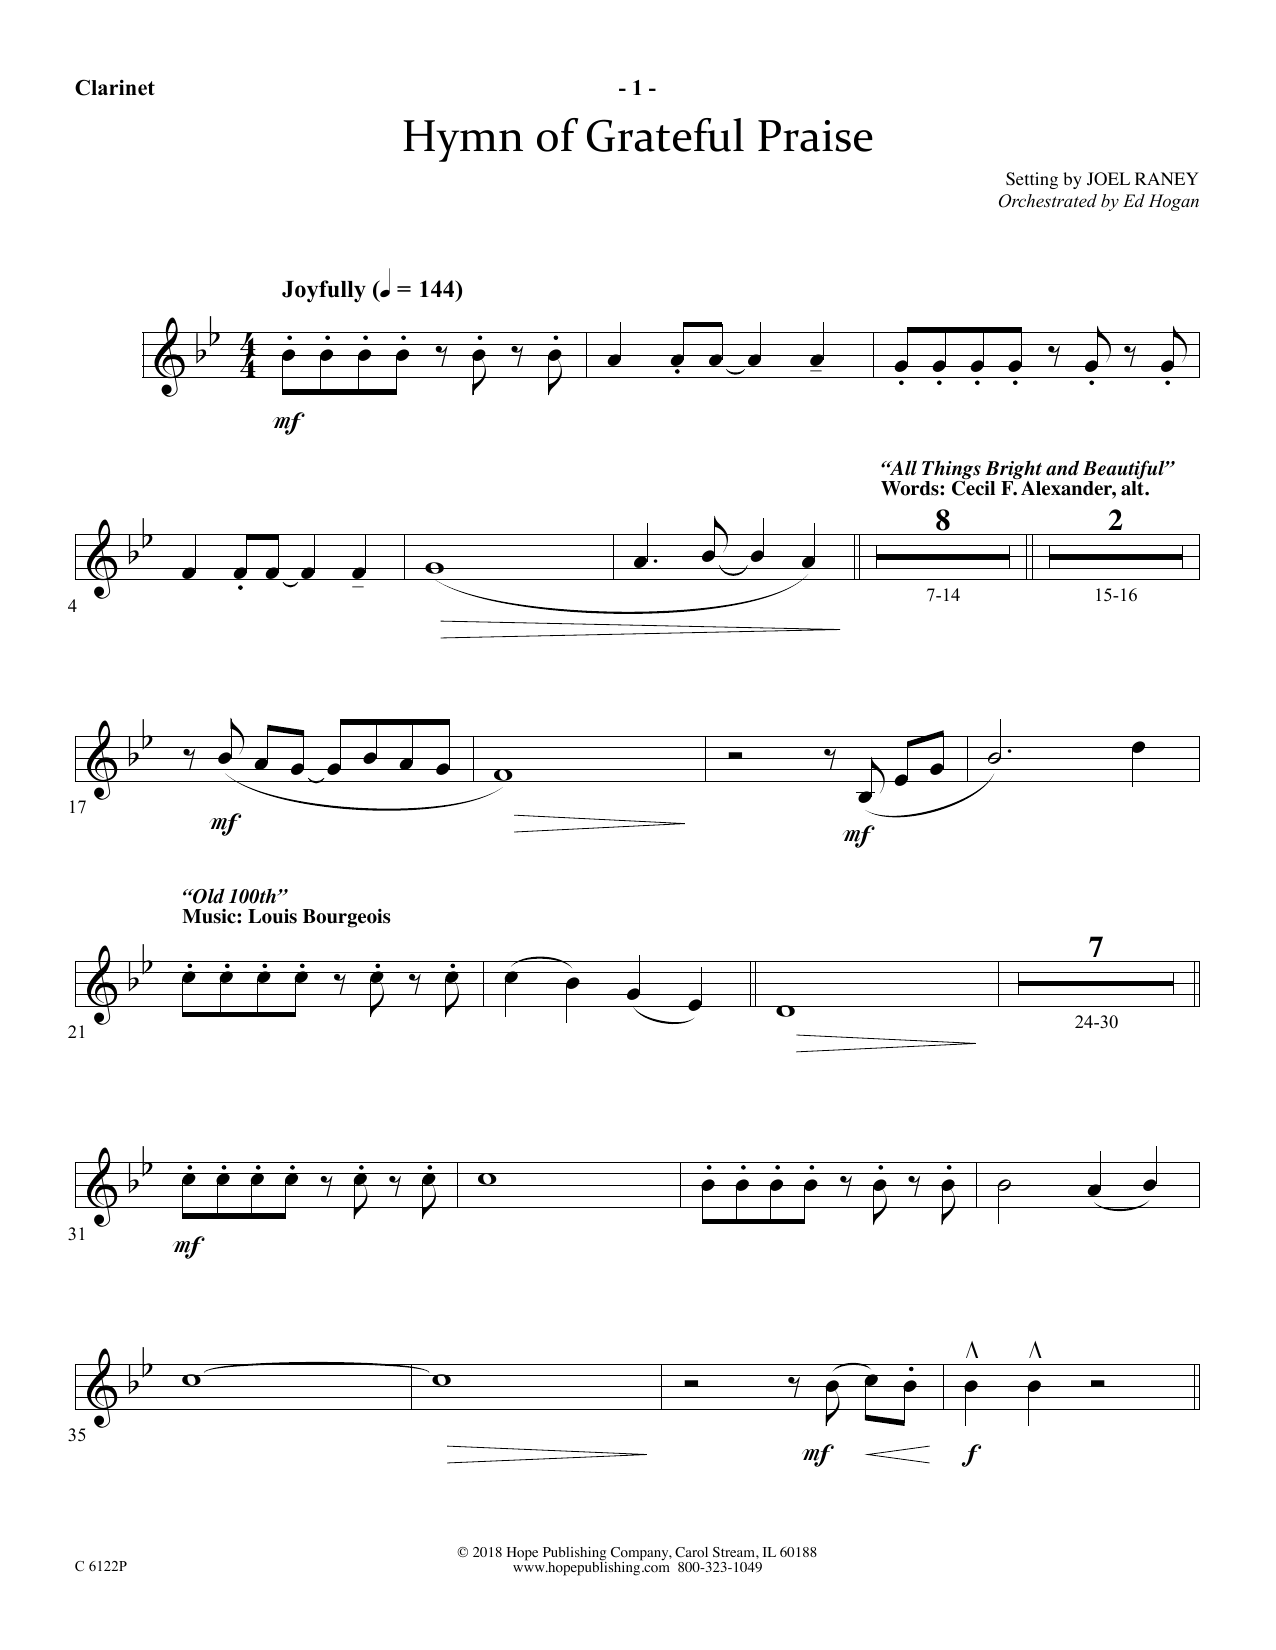 Joel Raney Hymn Of Grateful Praise - Clarinet Sheet Music Notes & Chords for Choir Instrumental Pak - Download or Print PDF